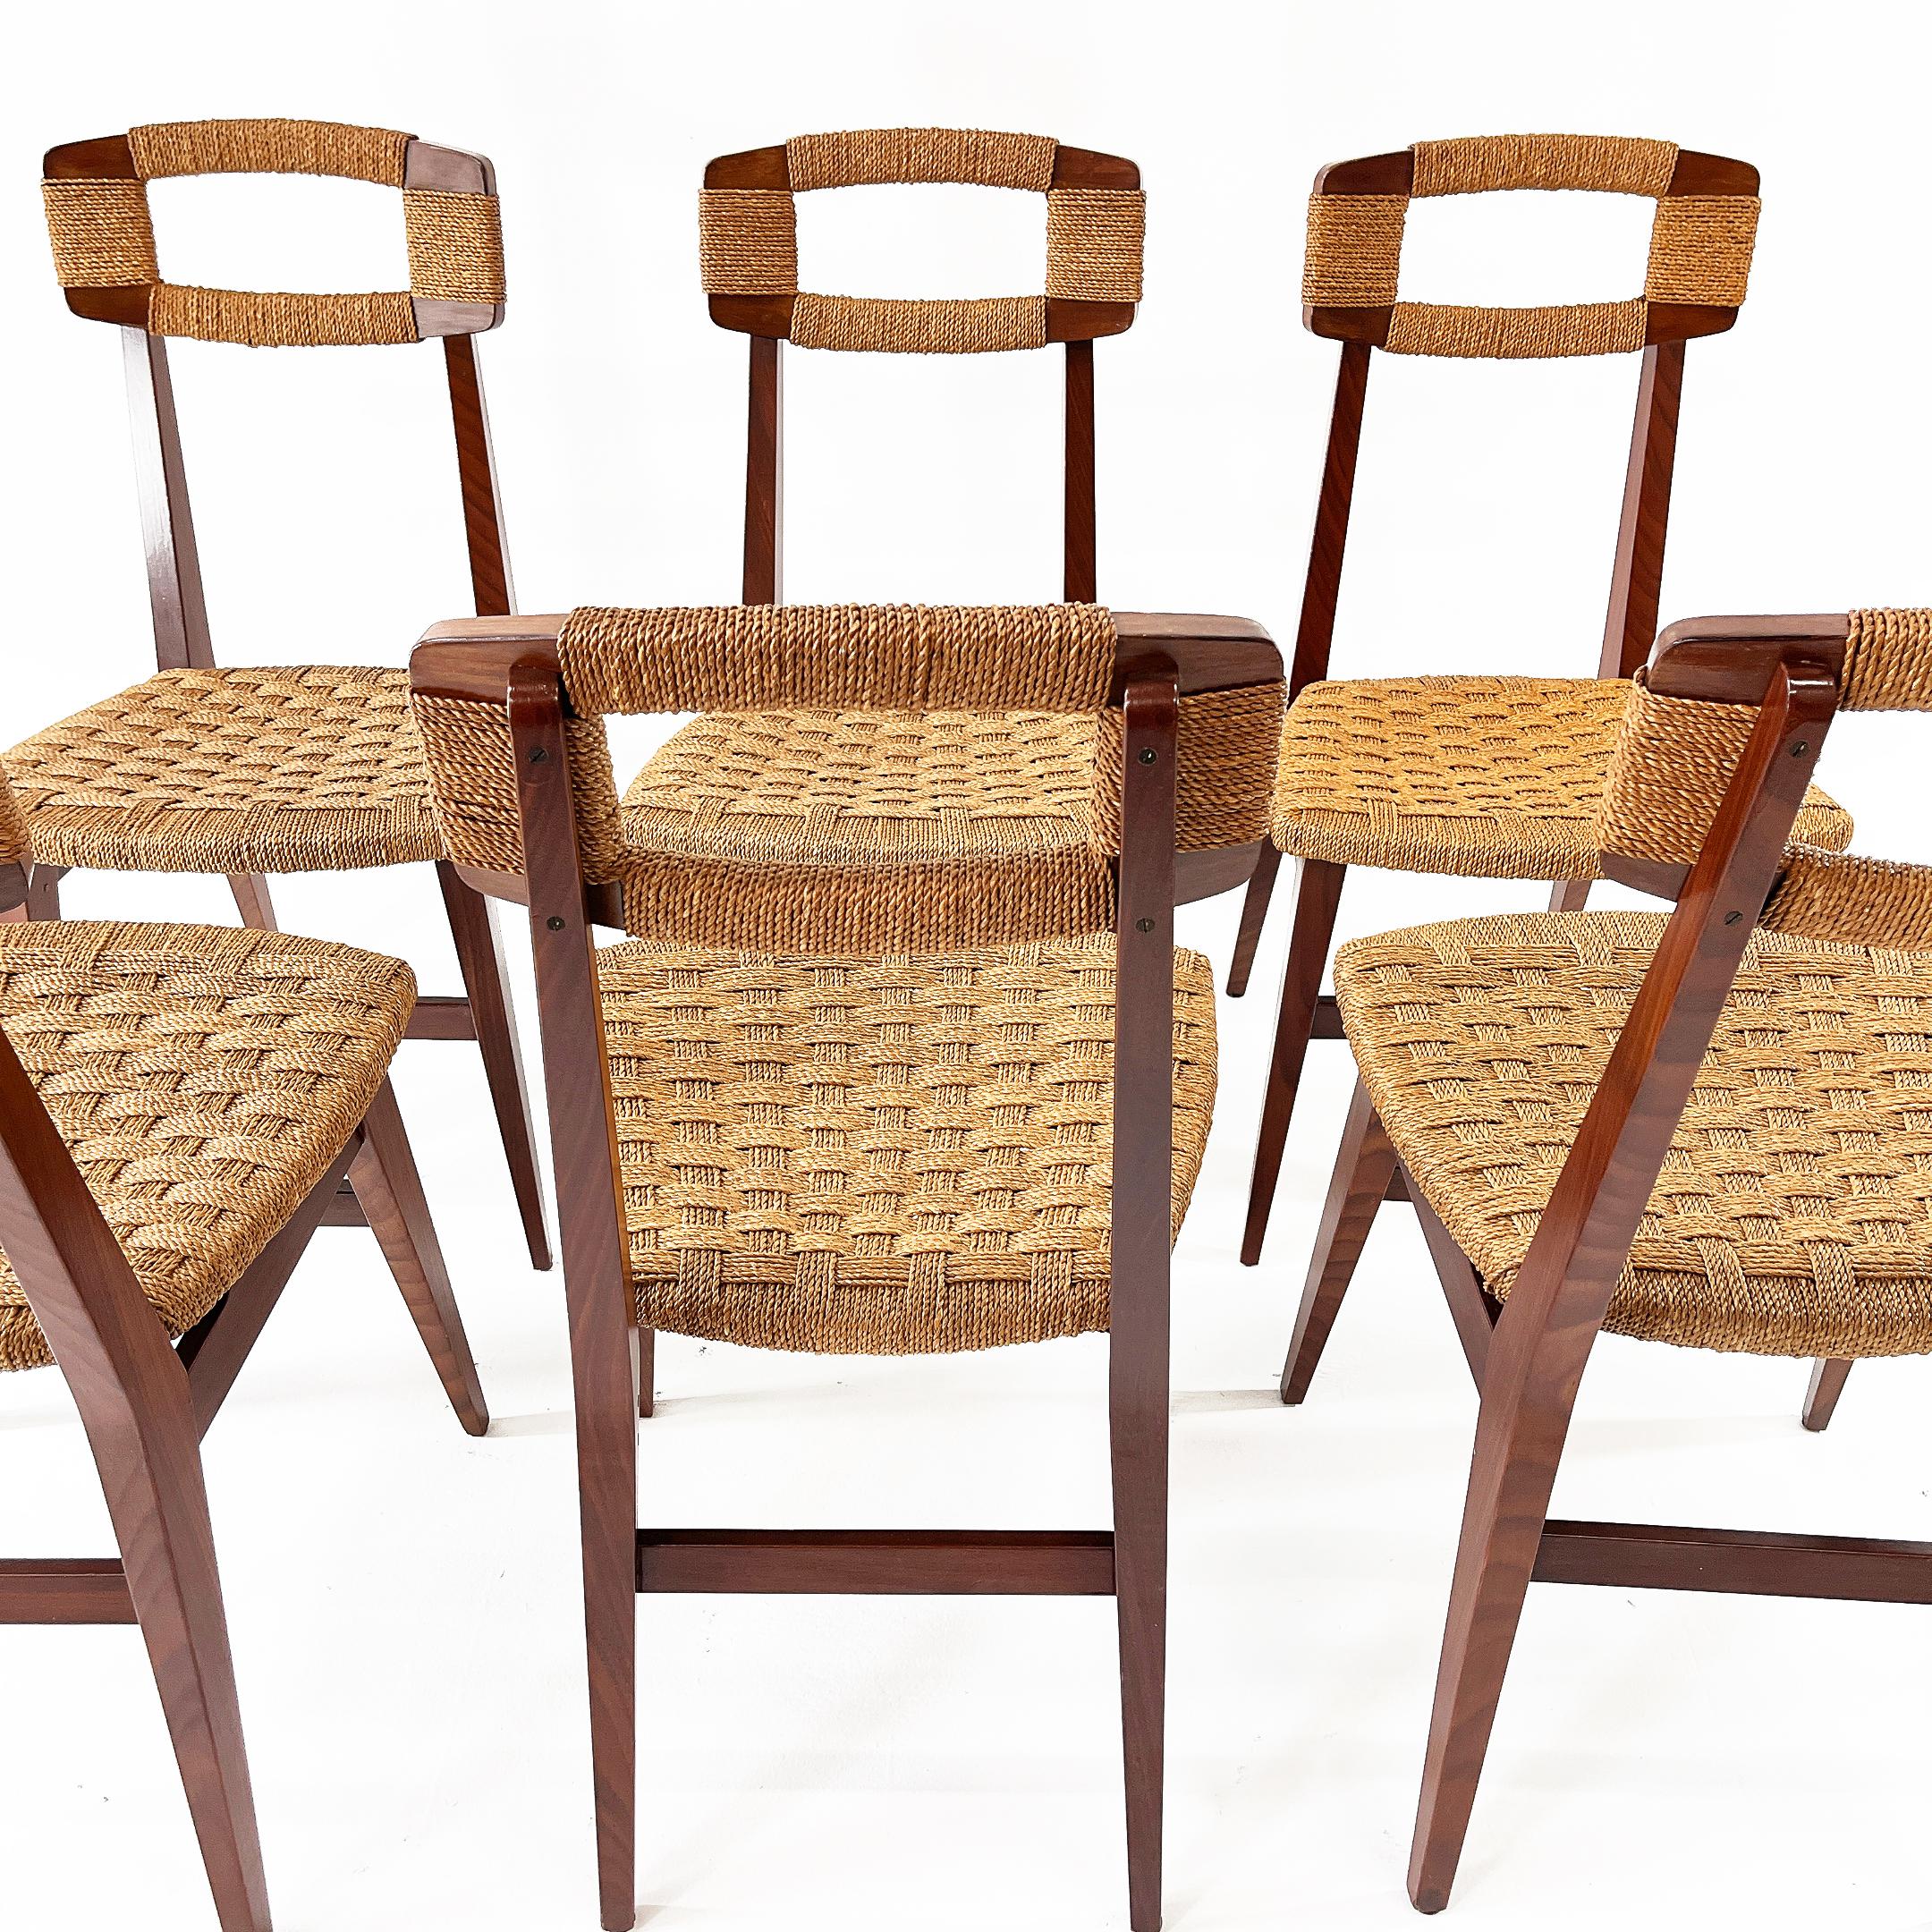 Rare beautiful six danish chairs. Wood, woven straw rope. Denmark 1950s.